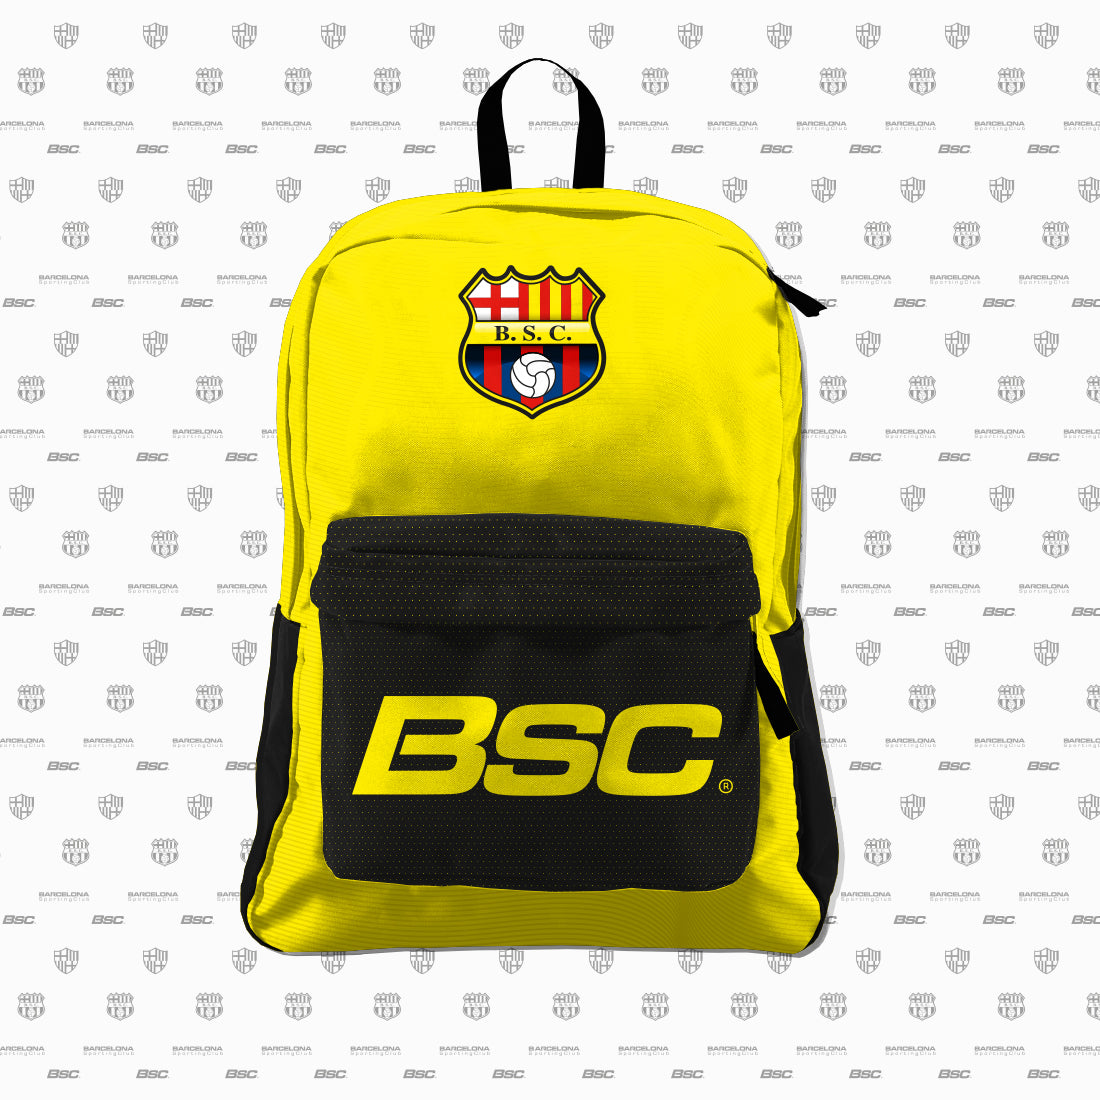 Maleta barcelona Sporting Club ( BSC )